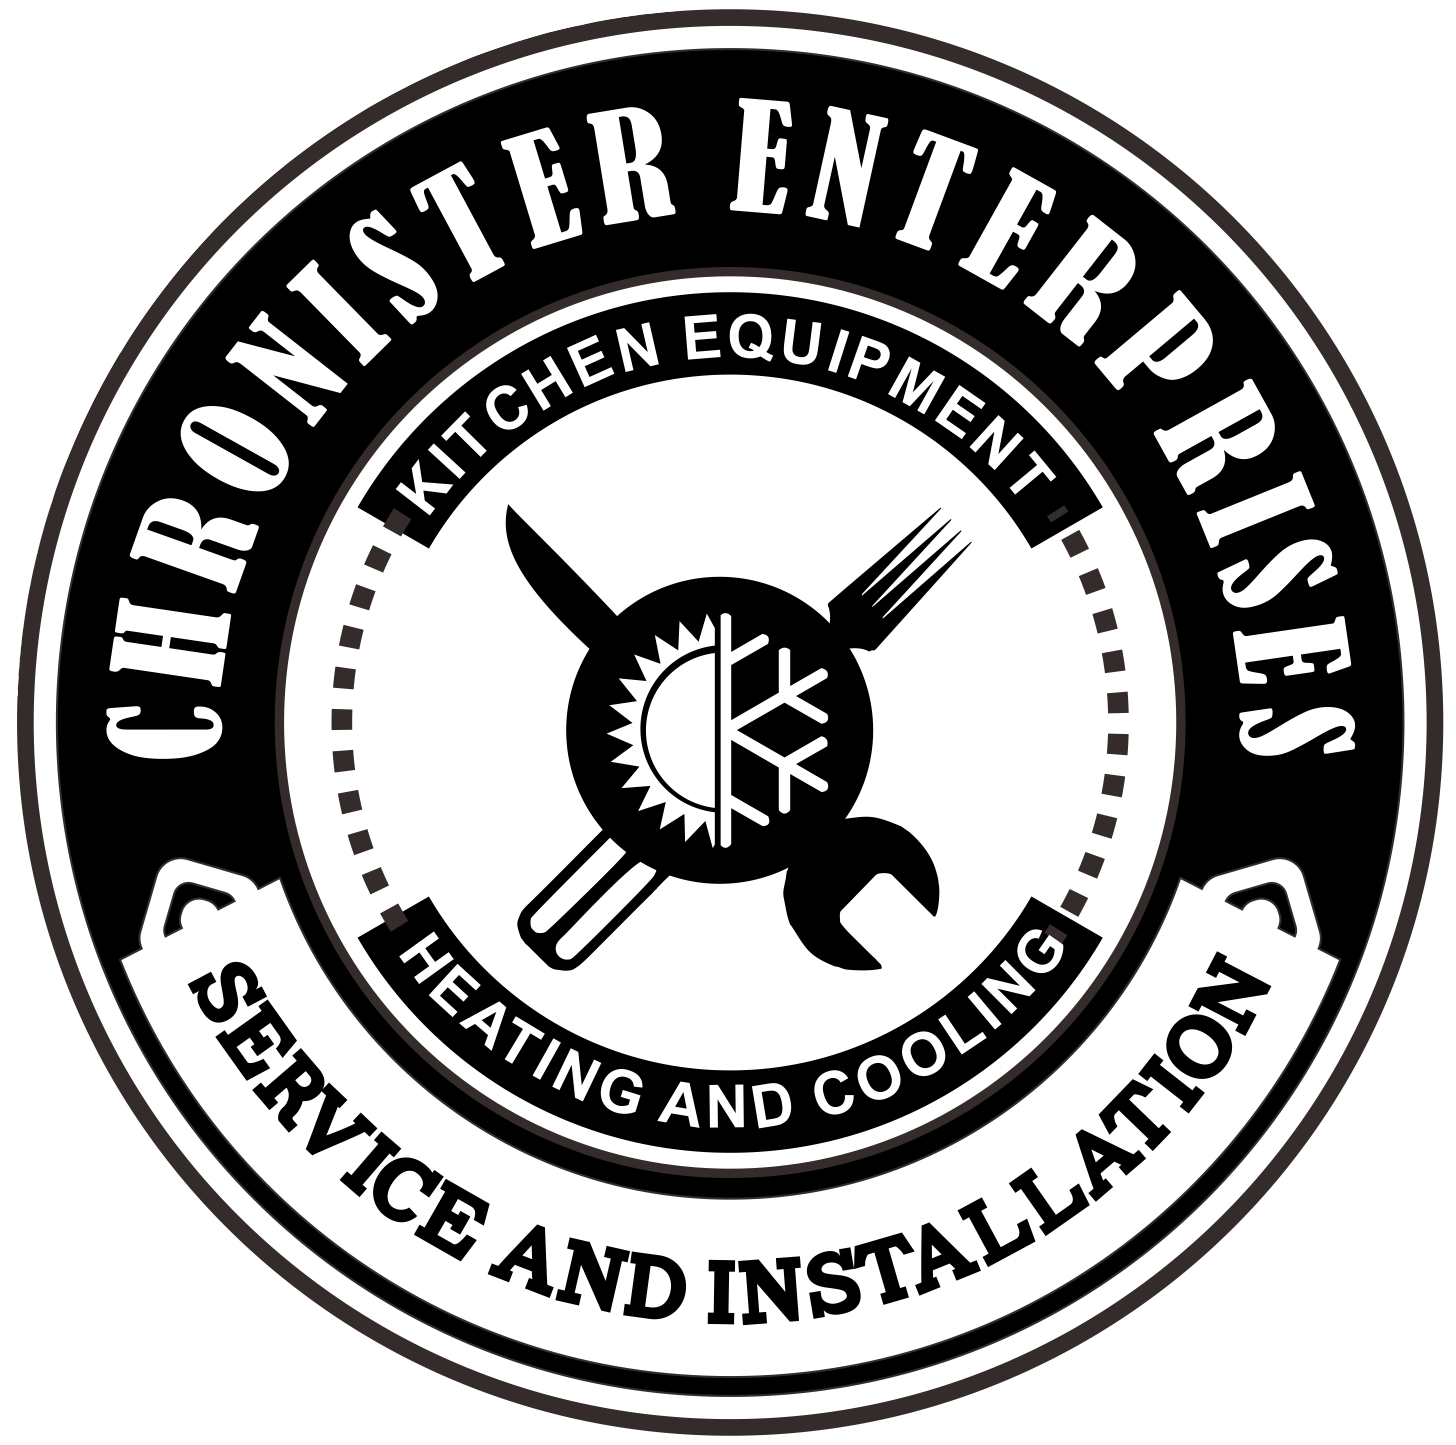 Chronister Enterprises